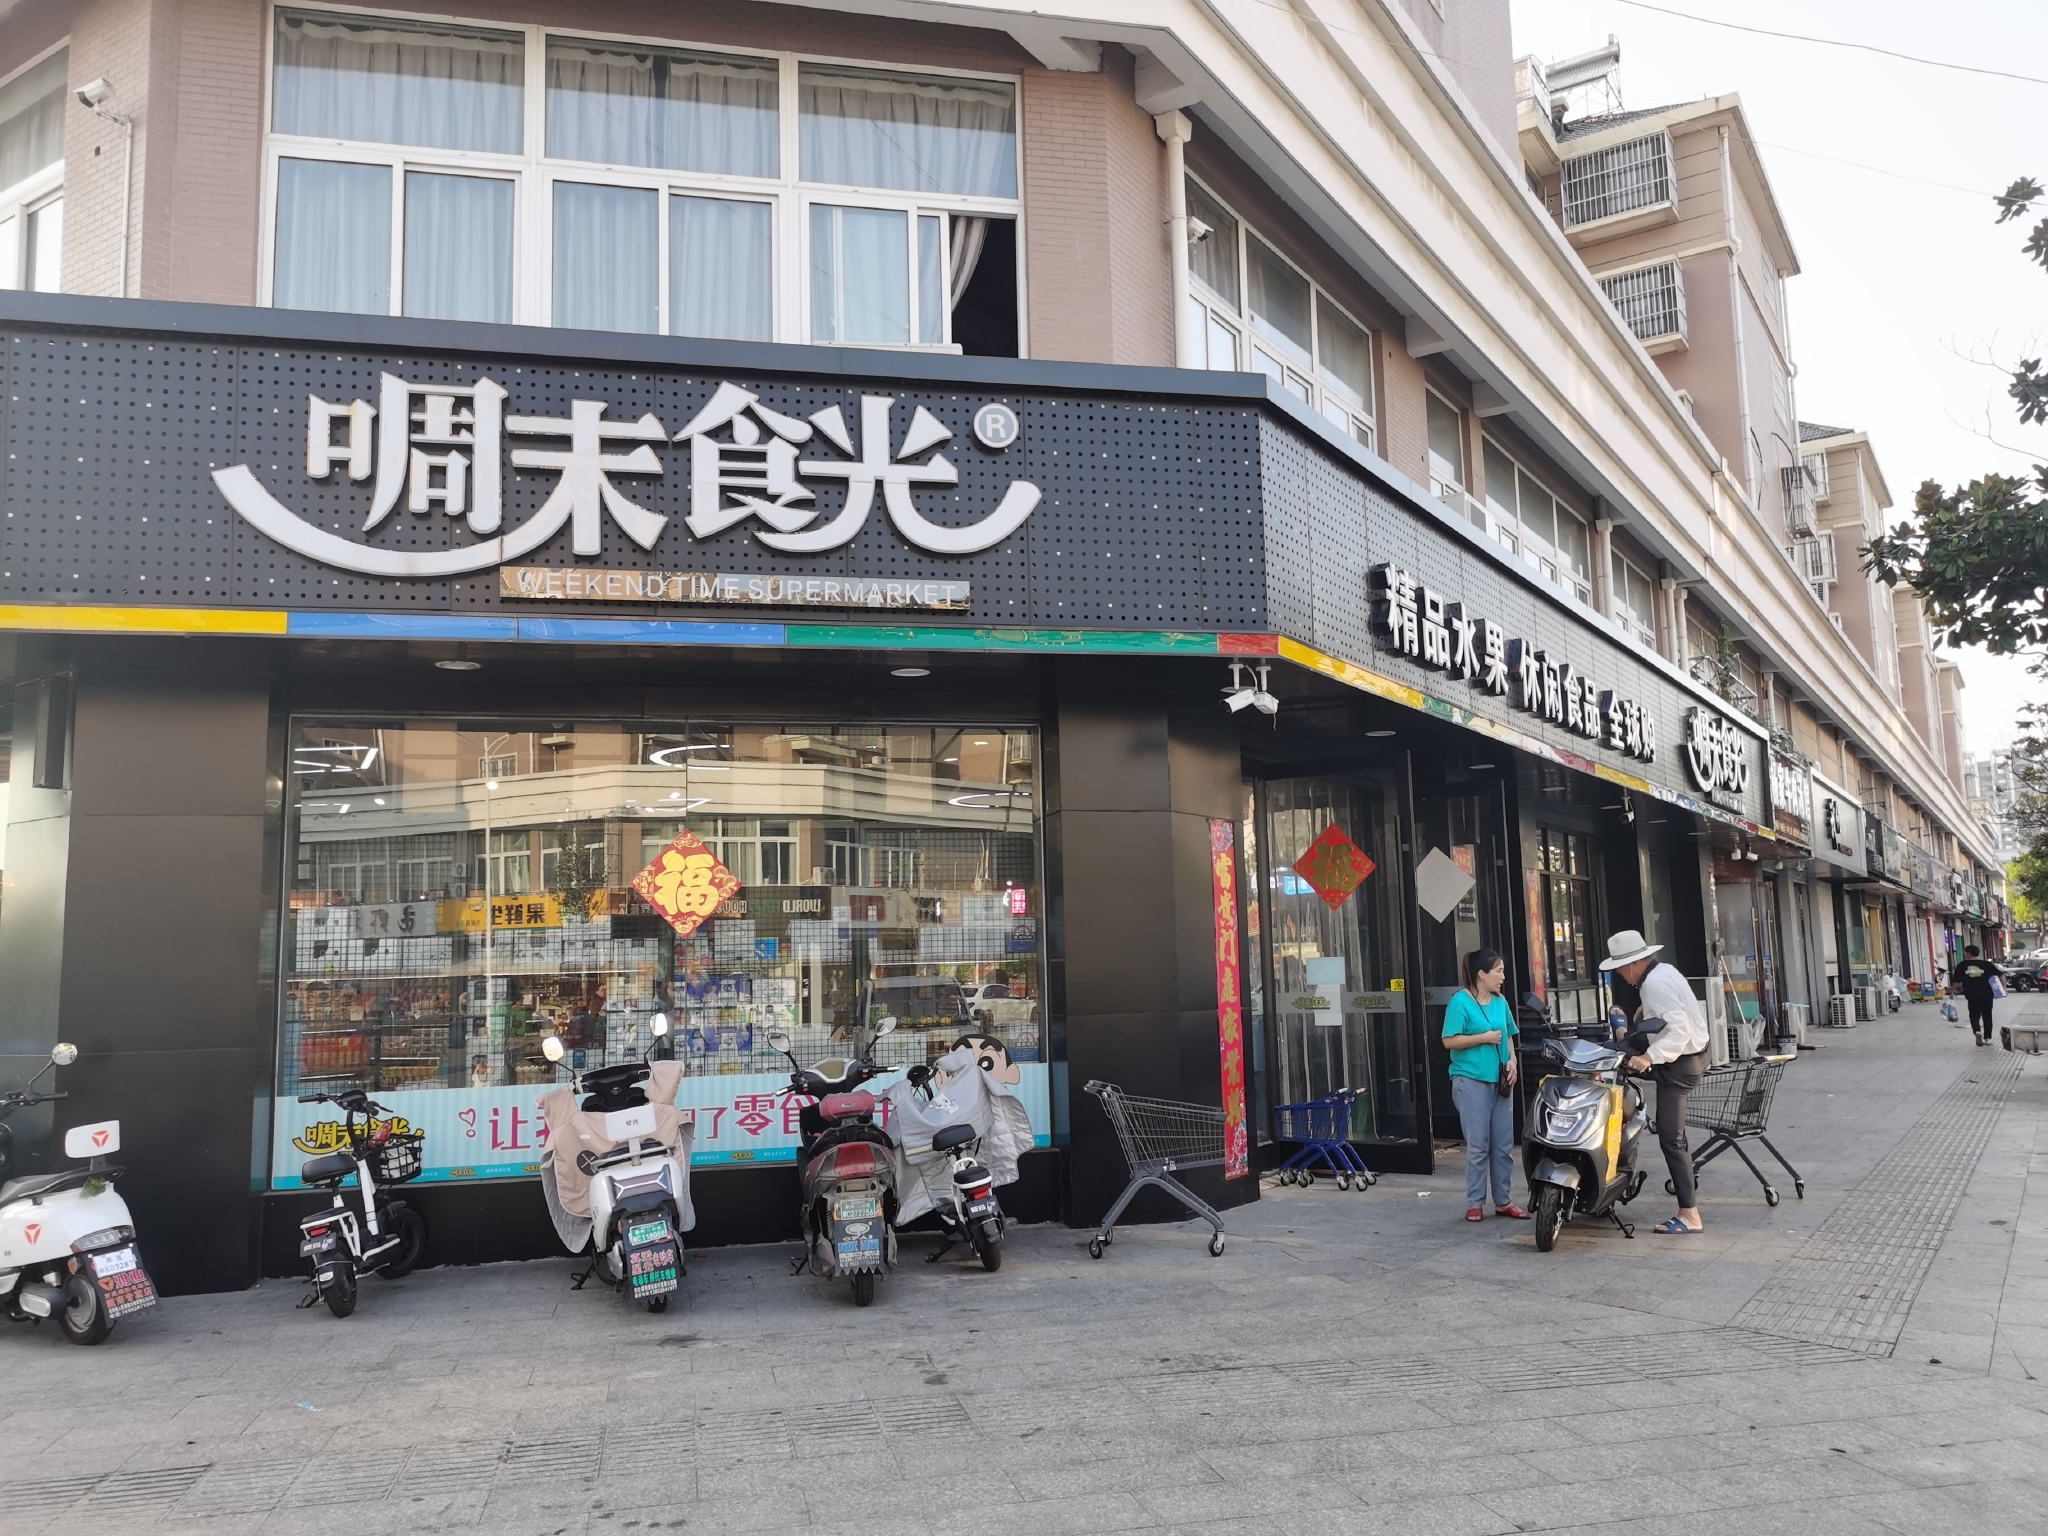  戴南镇的“啁末食光”超市。